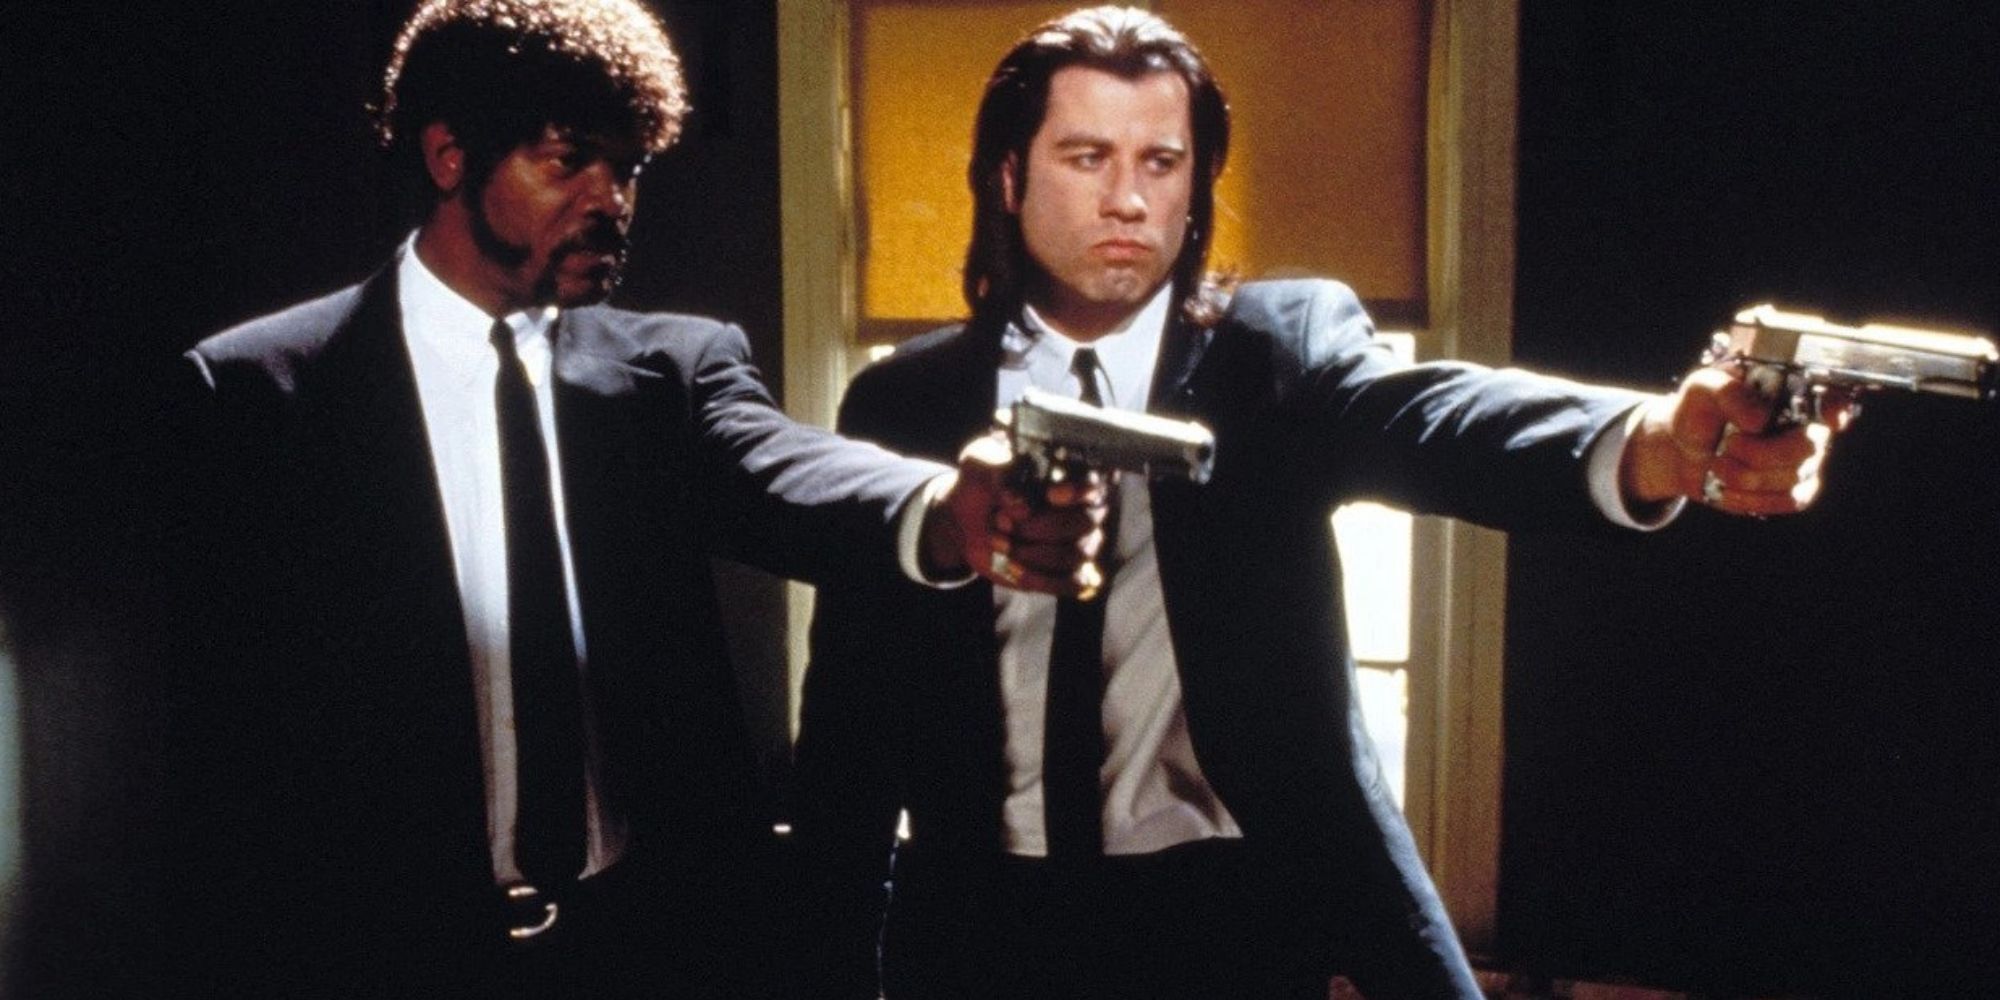 Samuel L. Jackson et John Travolta en costume, armes à la main, dans une scène de Pulp Fiction.